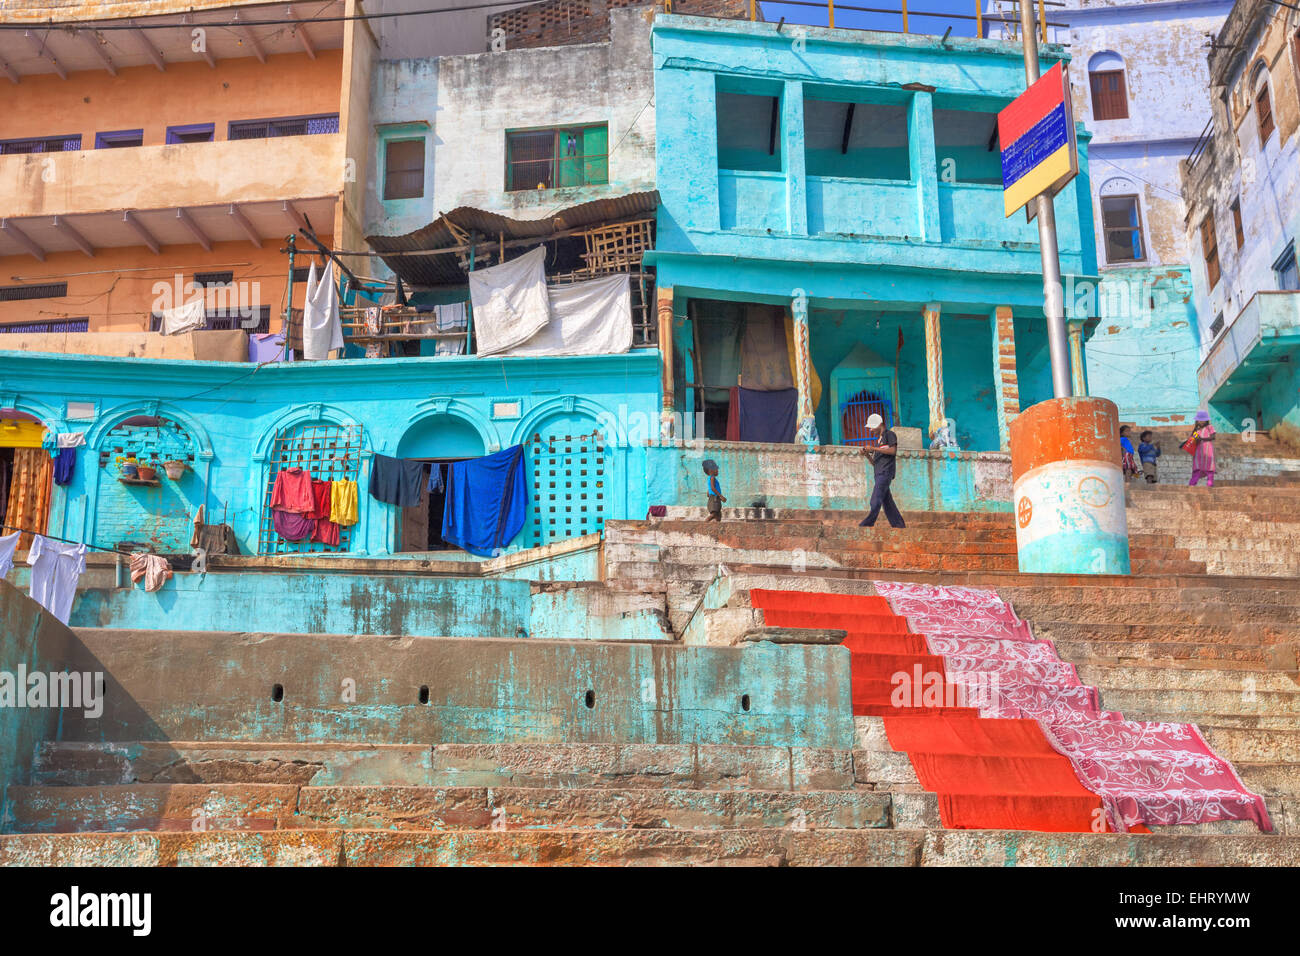 Holy city of Varanasi ghats, India Stock Photo